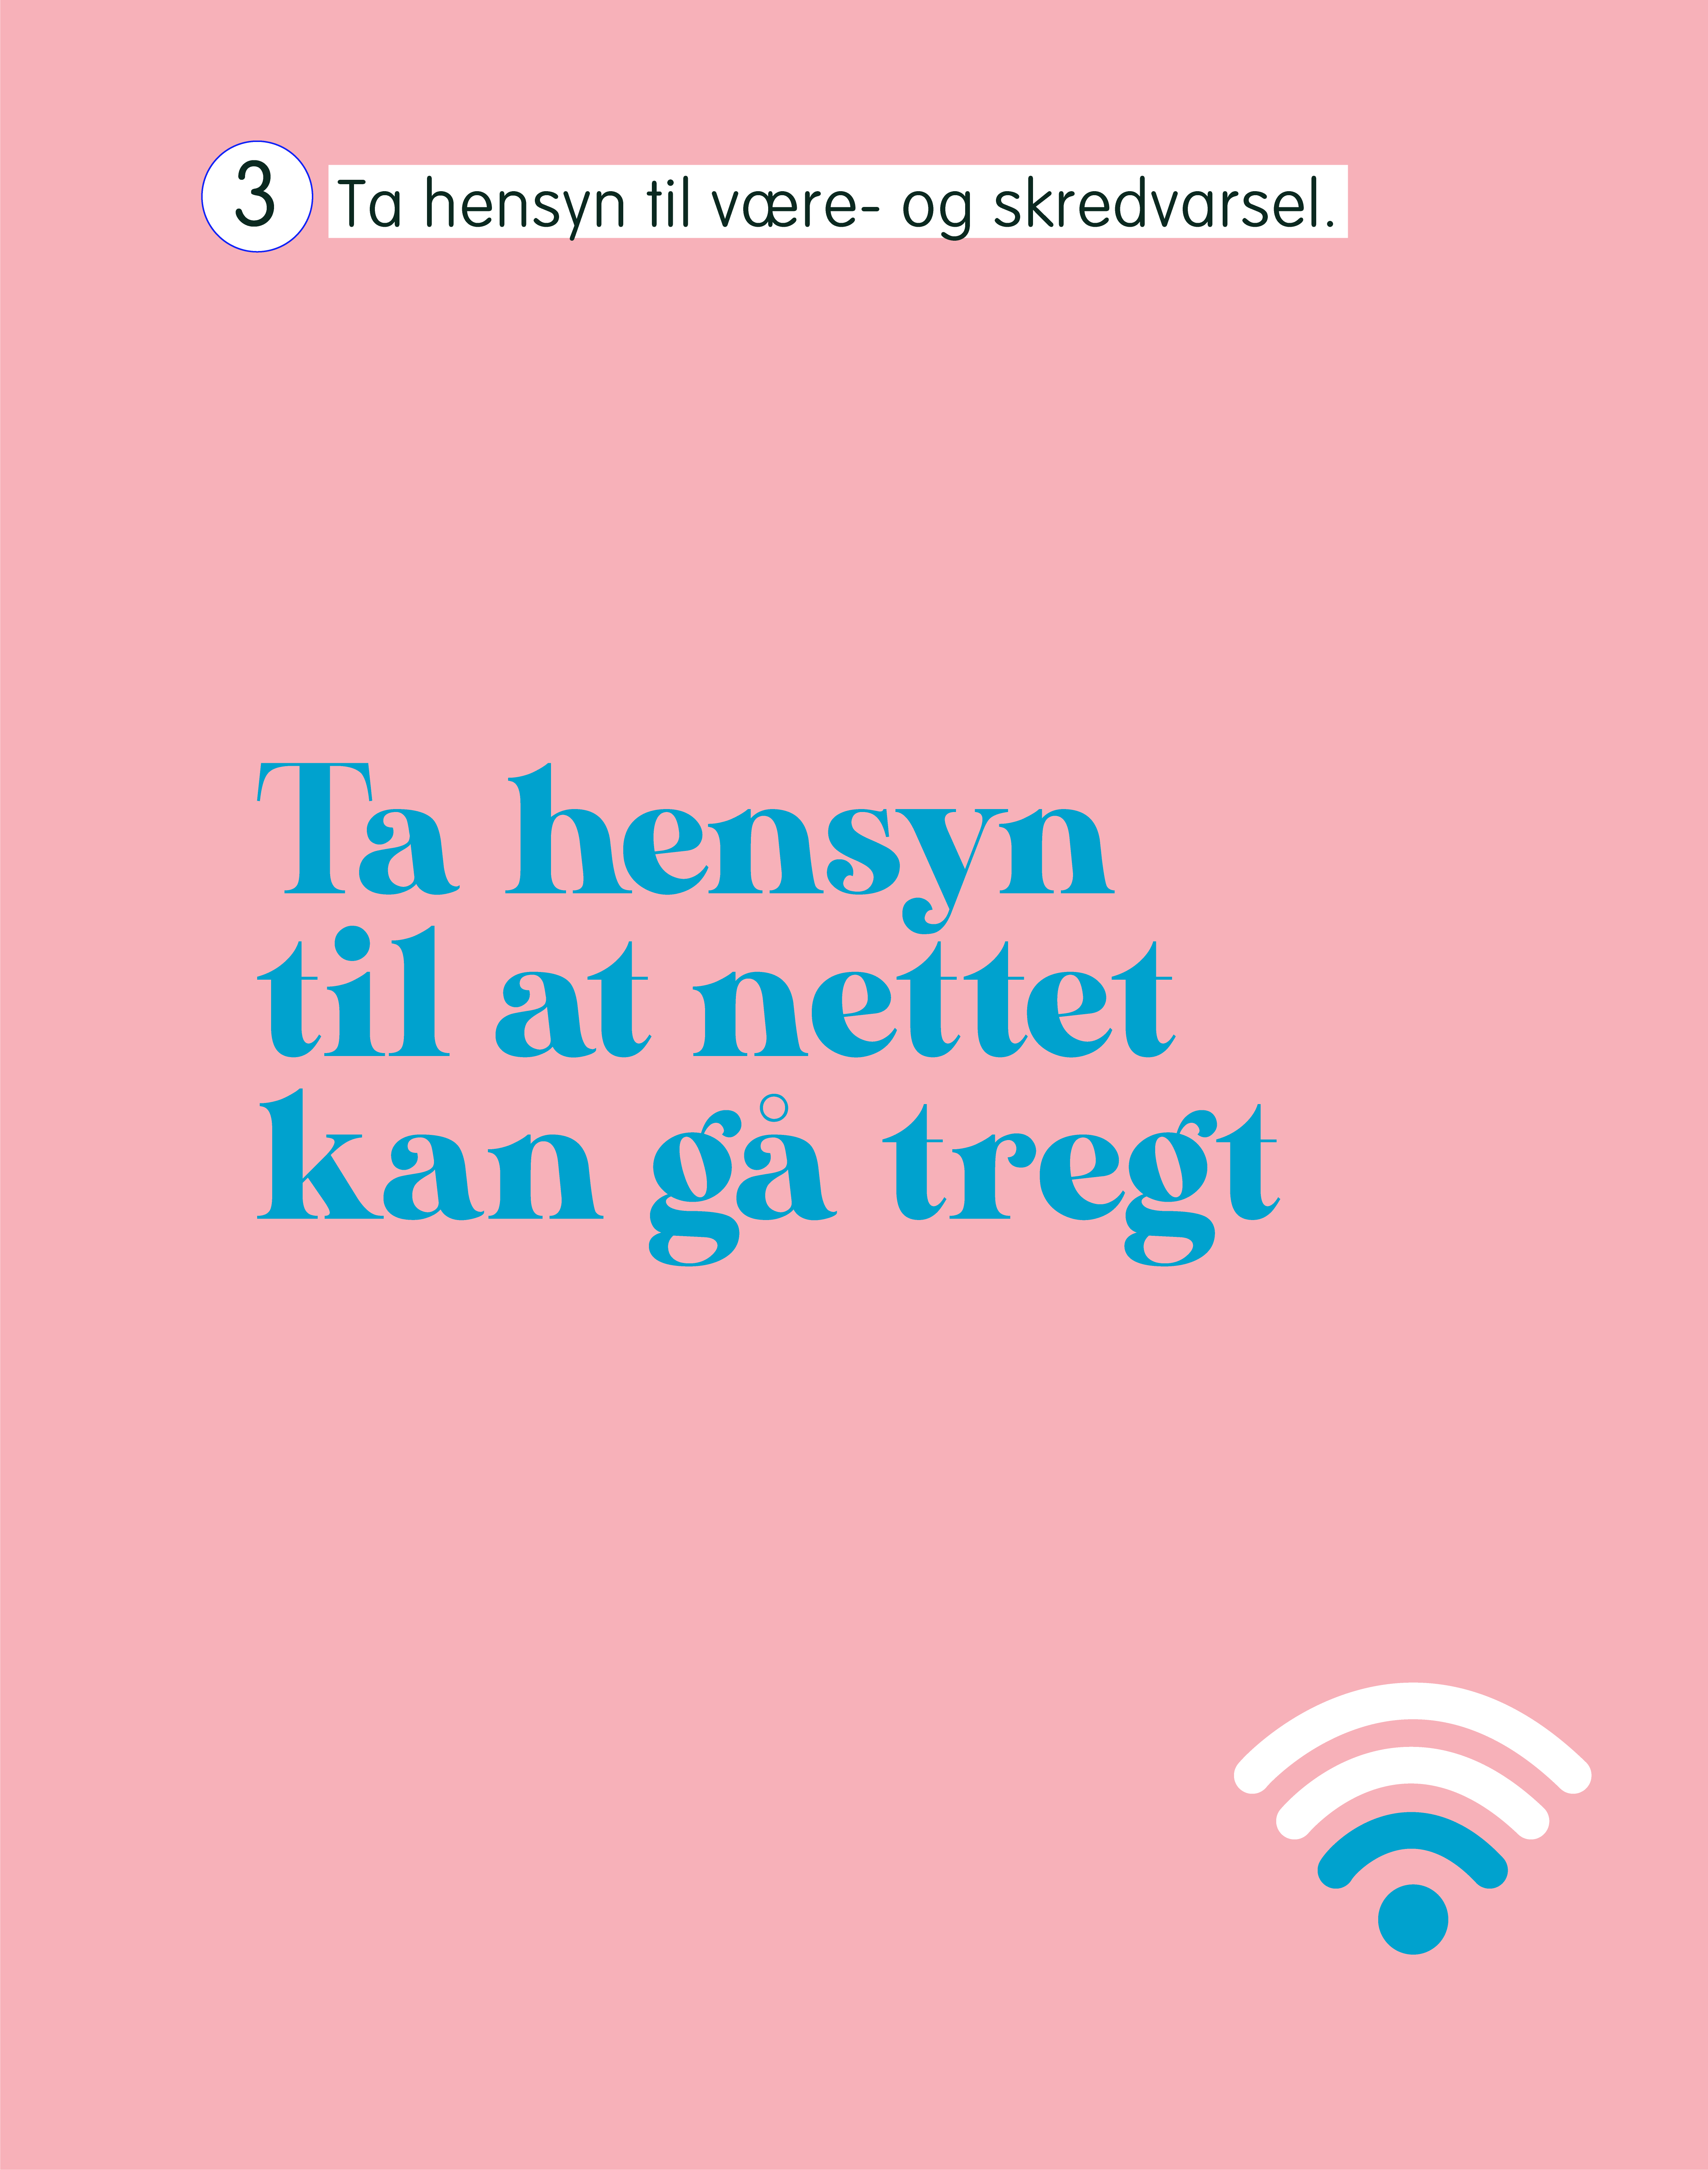 Plakat laget av reklamestudenter som spille på fjellvettregel 3, her endret til: "ta hensyn til at nettet kan gå tregt". Det er skrevet i blå tekst på en rosa bakgrunn, med symbol for wifi nederst i høyre hjørne. 